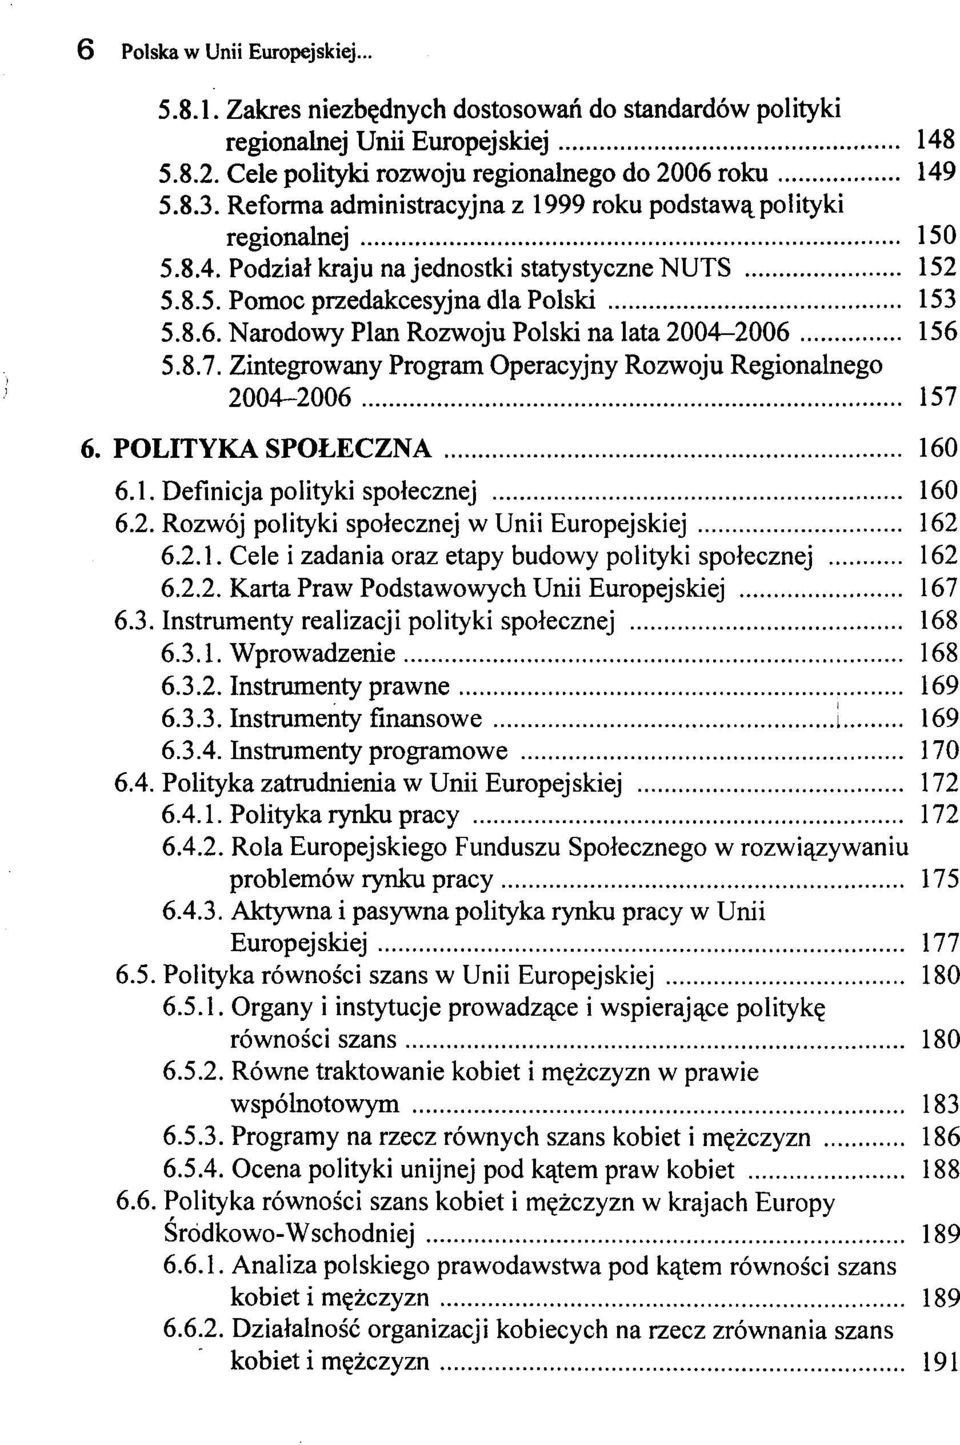 Narodowy Plan Rozwoju Polski na lata 2004-2006 156 5.8.7. Zintegrowany Program Operacyjny Rozwoju Regionalnego 2004-2006 157 6. POLITYKA SPOŁECZNA 160 6.1. Definicja polityki społecznej 160 6.2. Rozwój polityki społecznej w Unii Europejskiej 162 6.